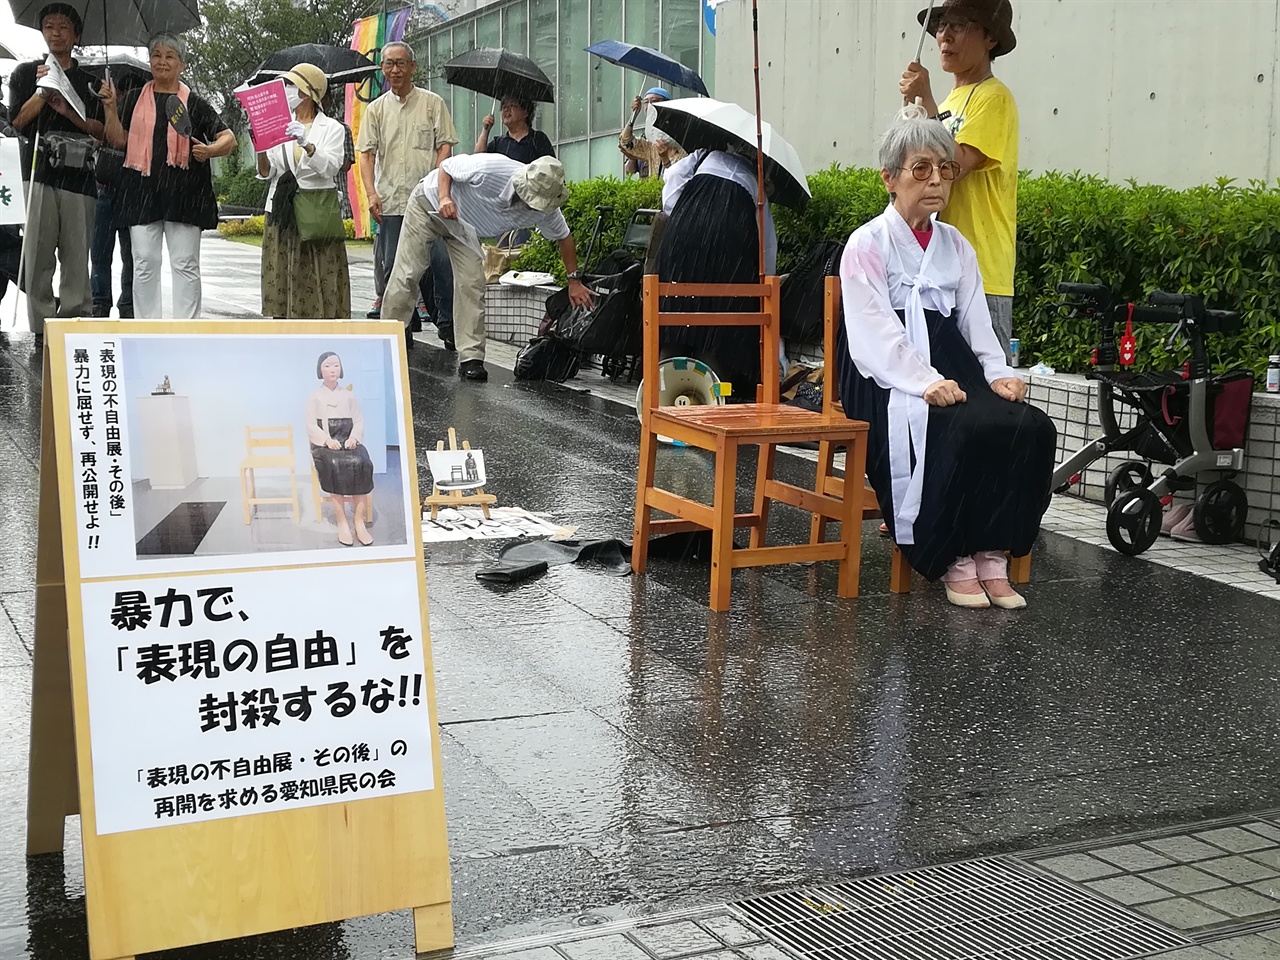 갑자기 쏟아진 폭우에도 '소녀상'의 자리를 지키는 니시 에이코씨.